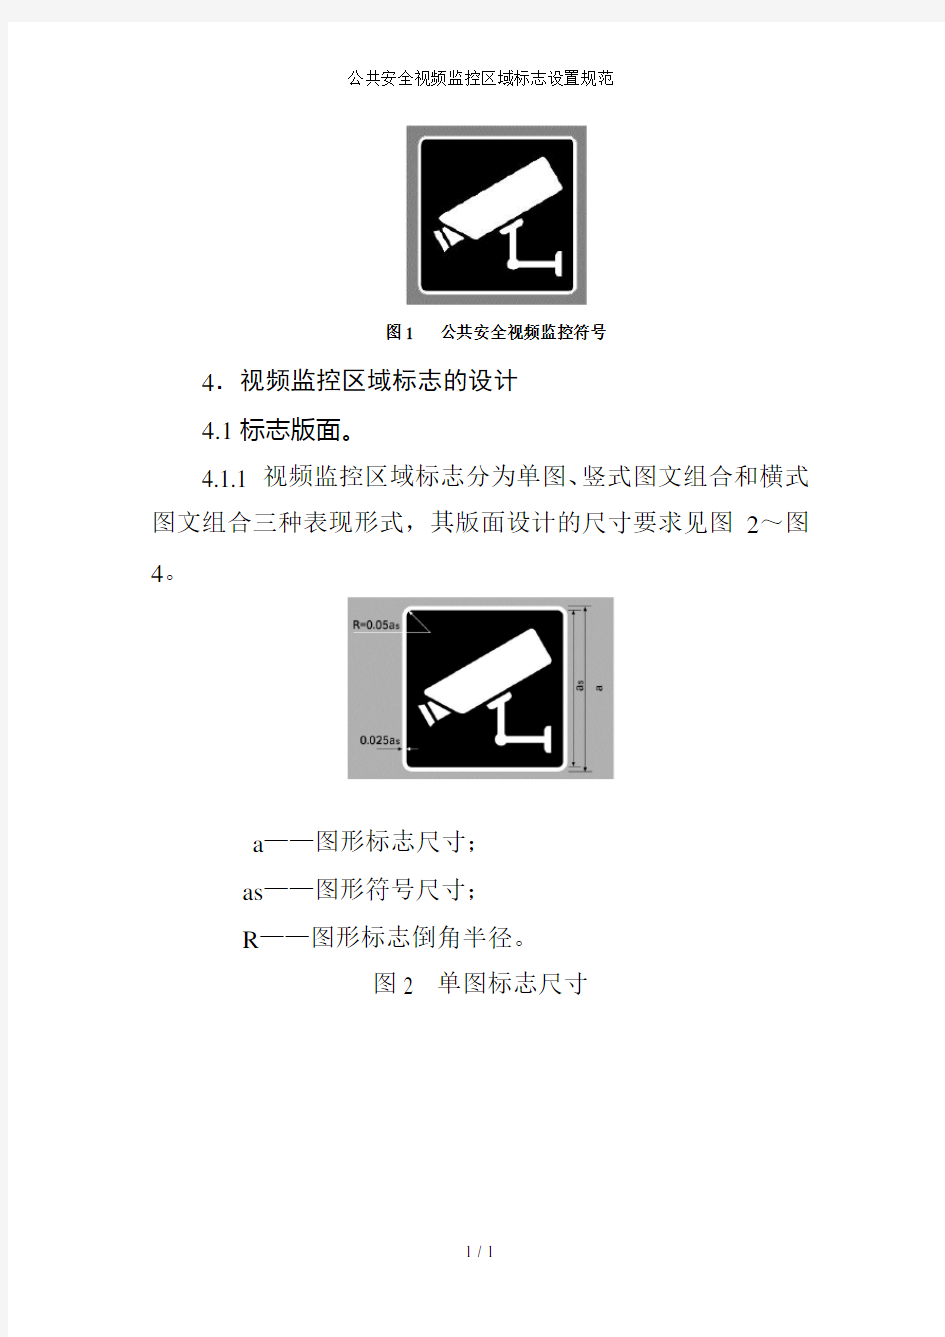 公共安全视频监控区域标志设置规范